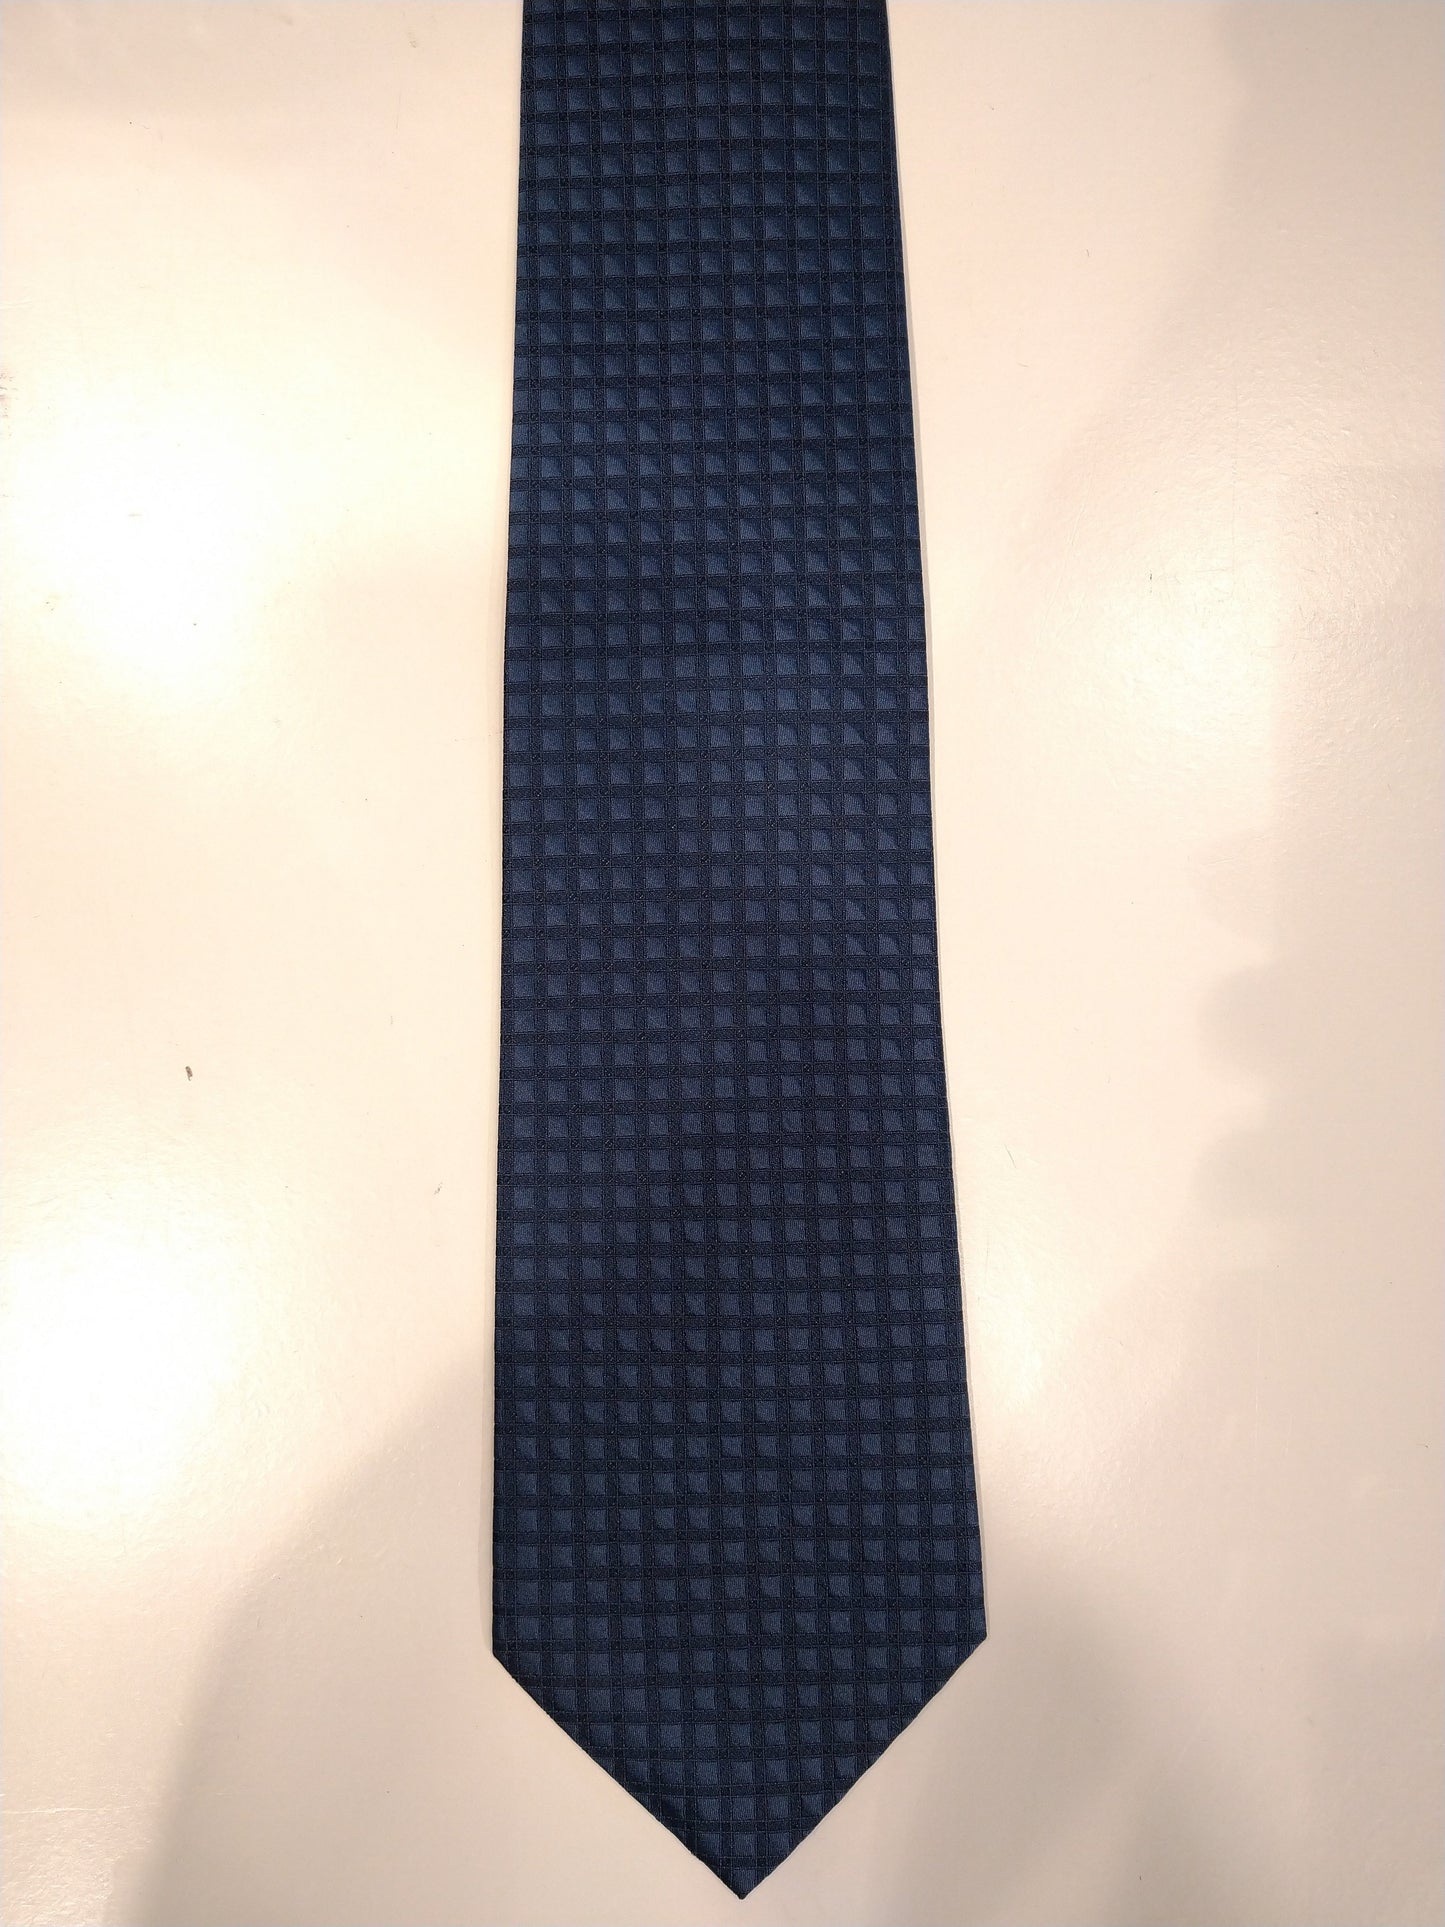 Silk tie. Gray ribbed motif.